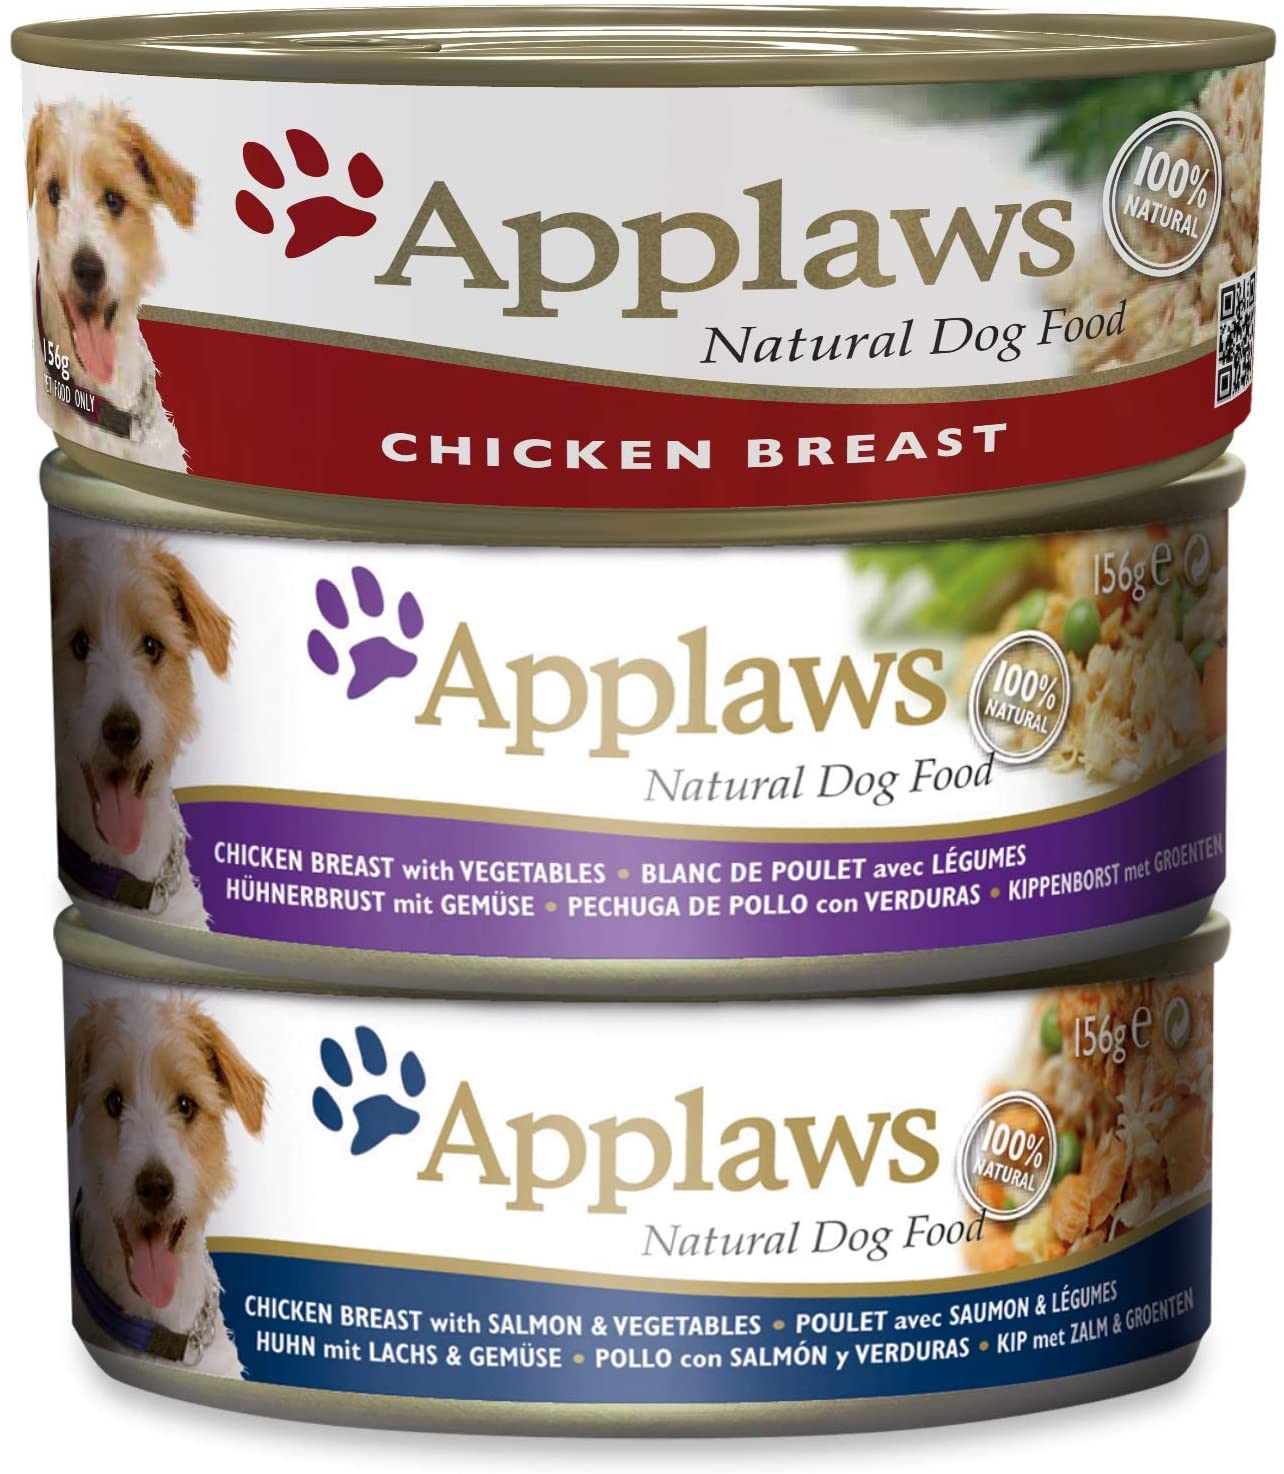  Applaws, Alimento Natural Para Perros, Selección Suprema, 8 x 156g 